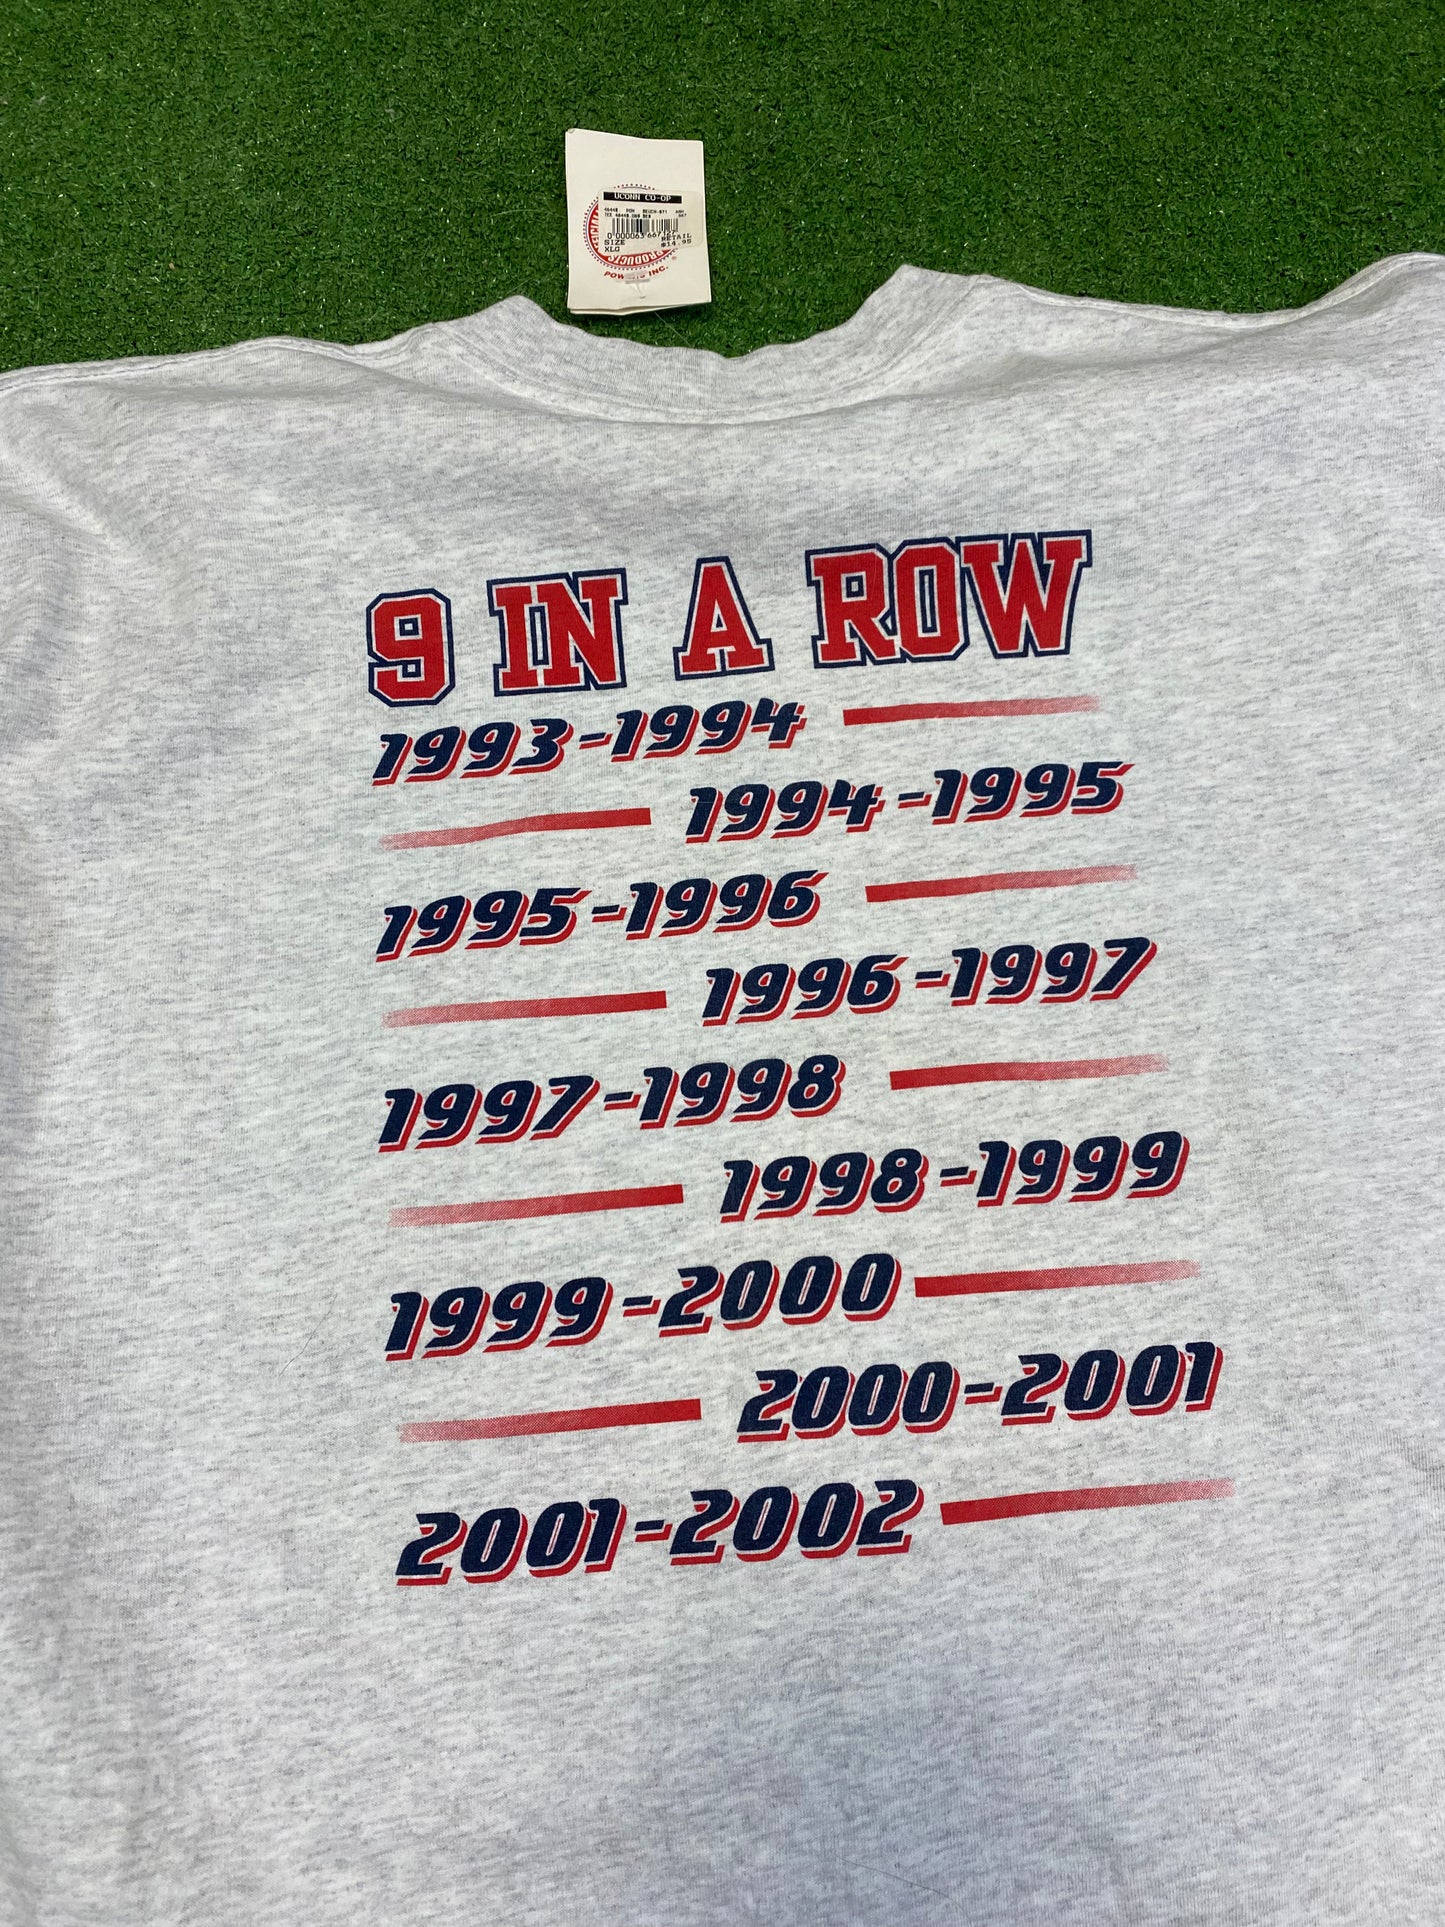 2001-02 UConn Huskies Women’s Basketball T-Shirt